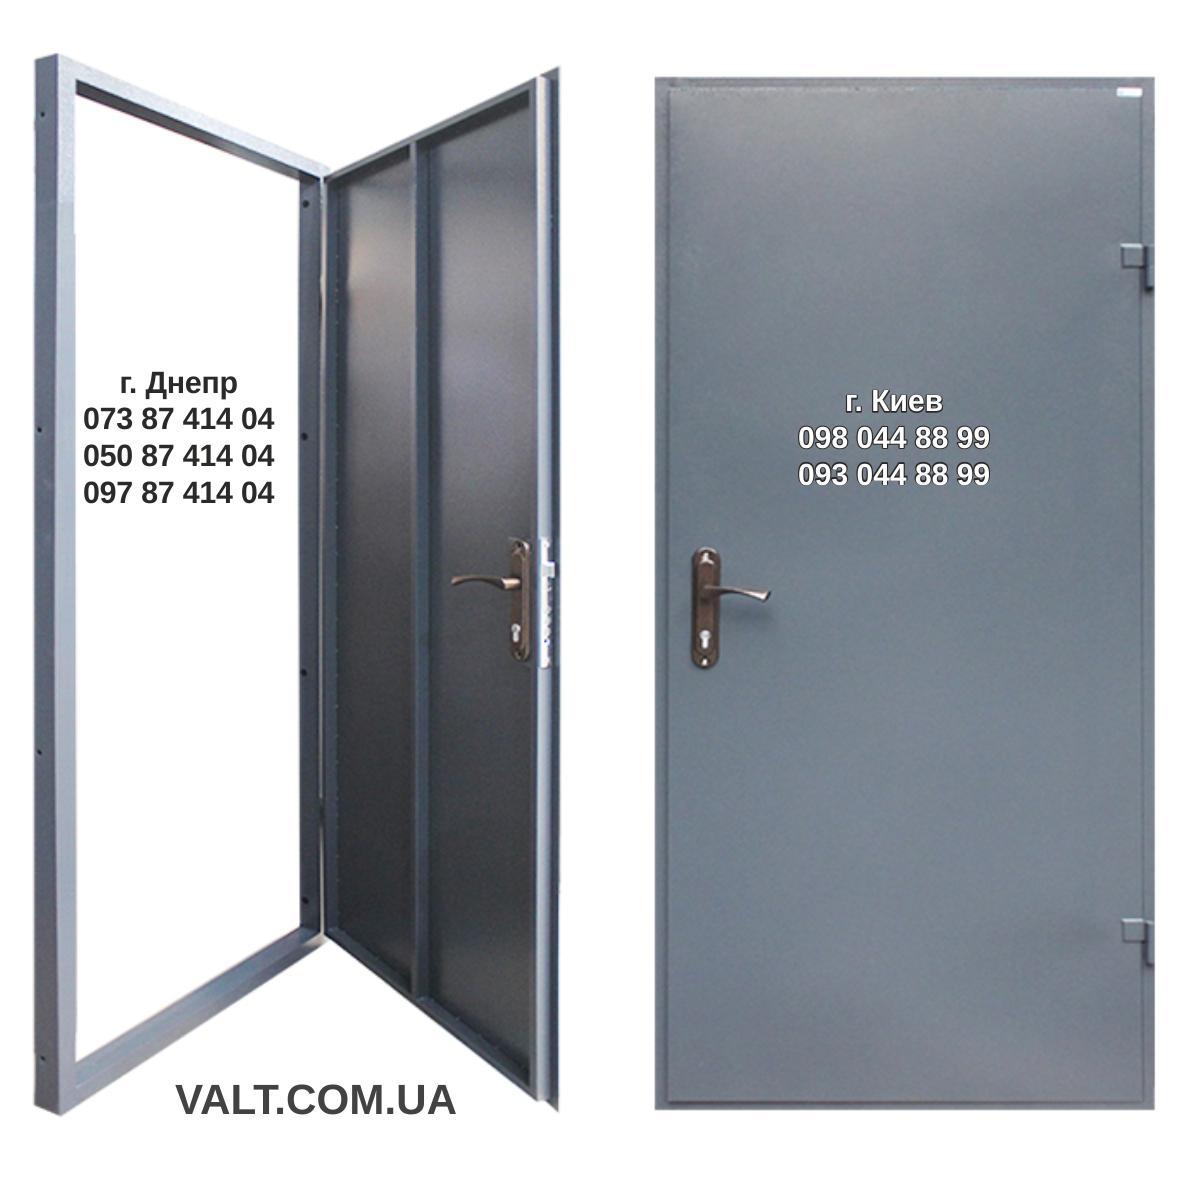 Технические железные двери. Дверь техническая 7024 RAL. Дверь входная рал 7024. Метплическая дверь рал 7024 метел метал 3 петли. Техническая дверь 7024 1 замок.